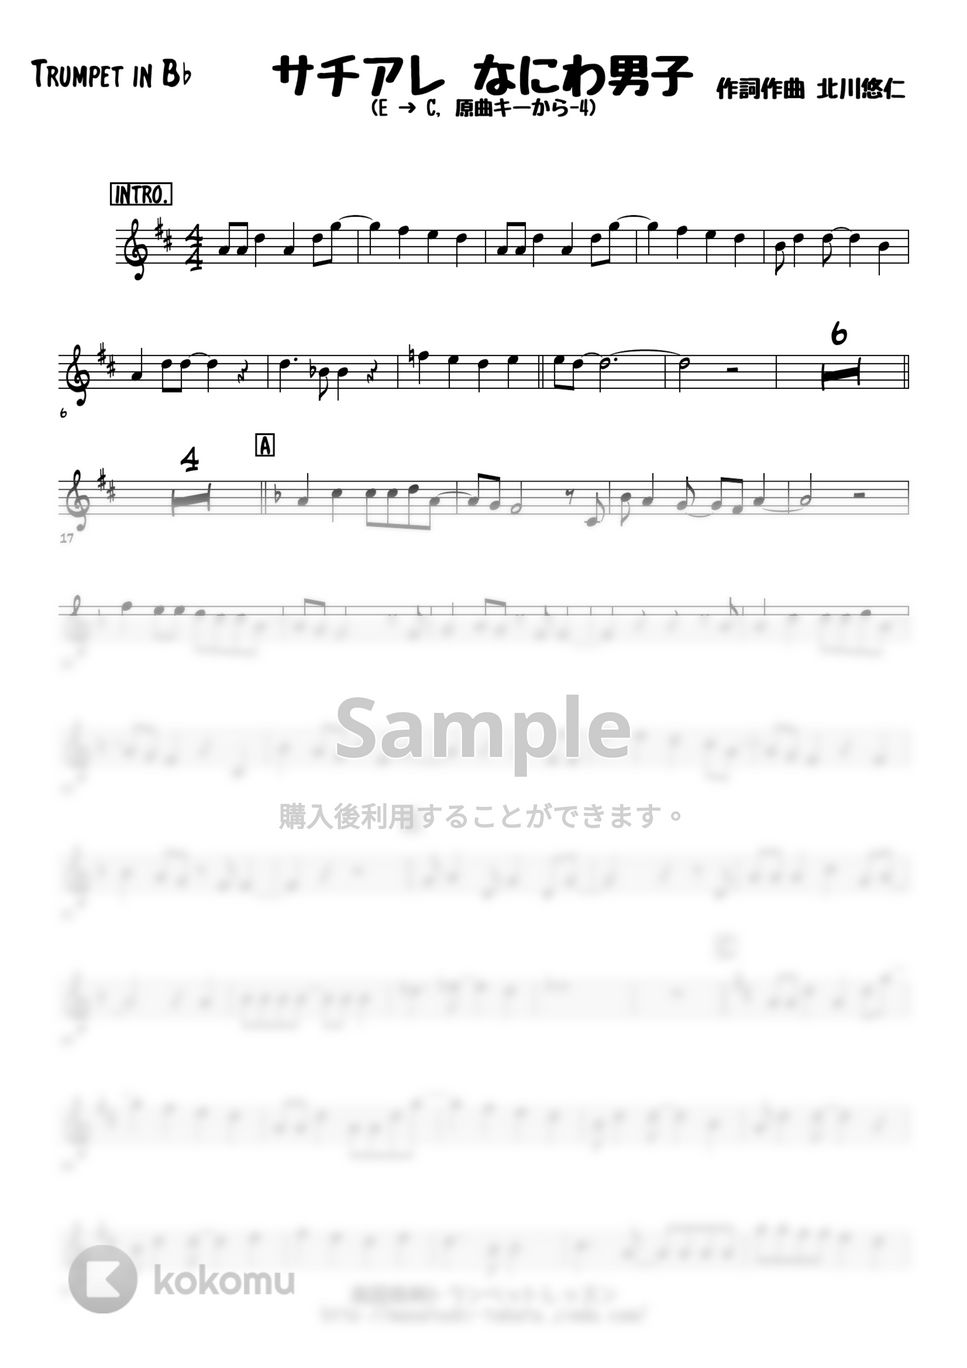 なにわ男子 - サチアレ (トランペットメロディー楽譜) by 高田将利